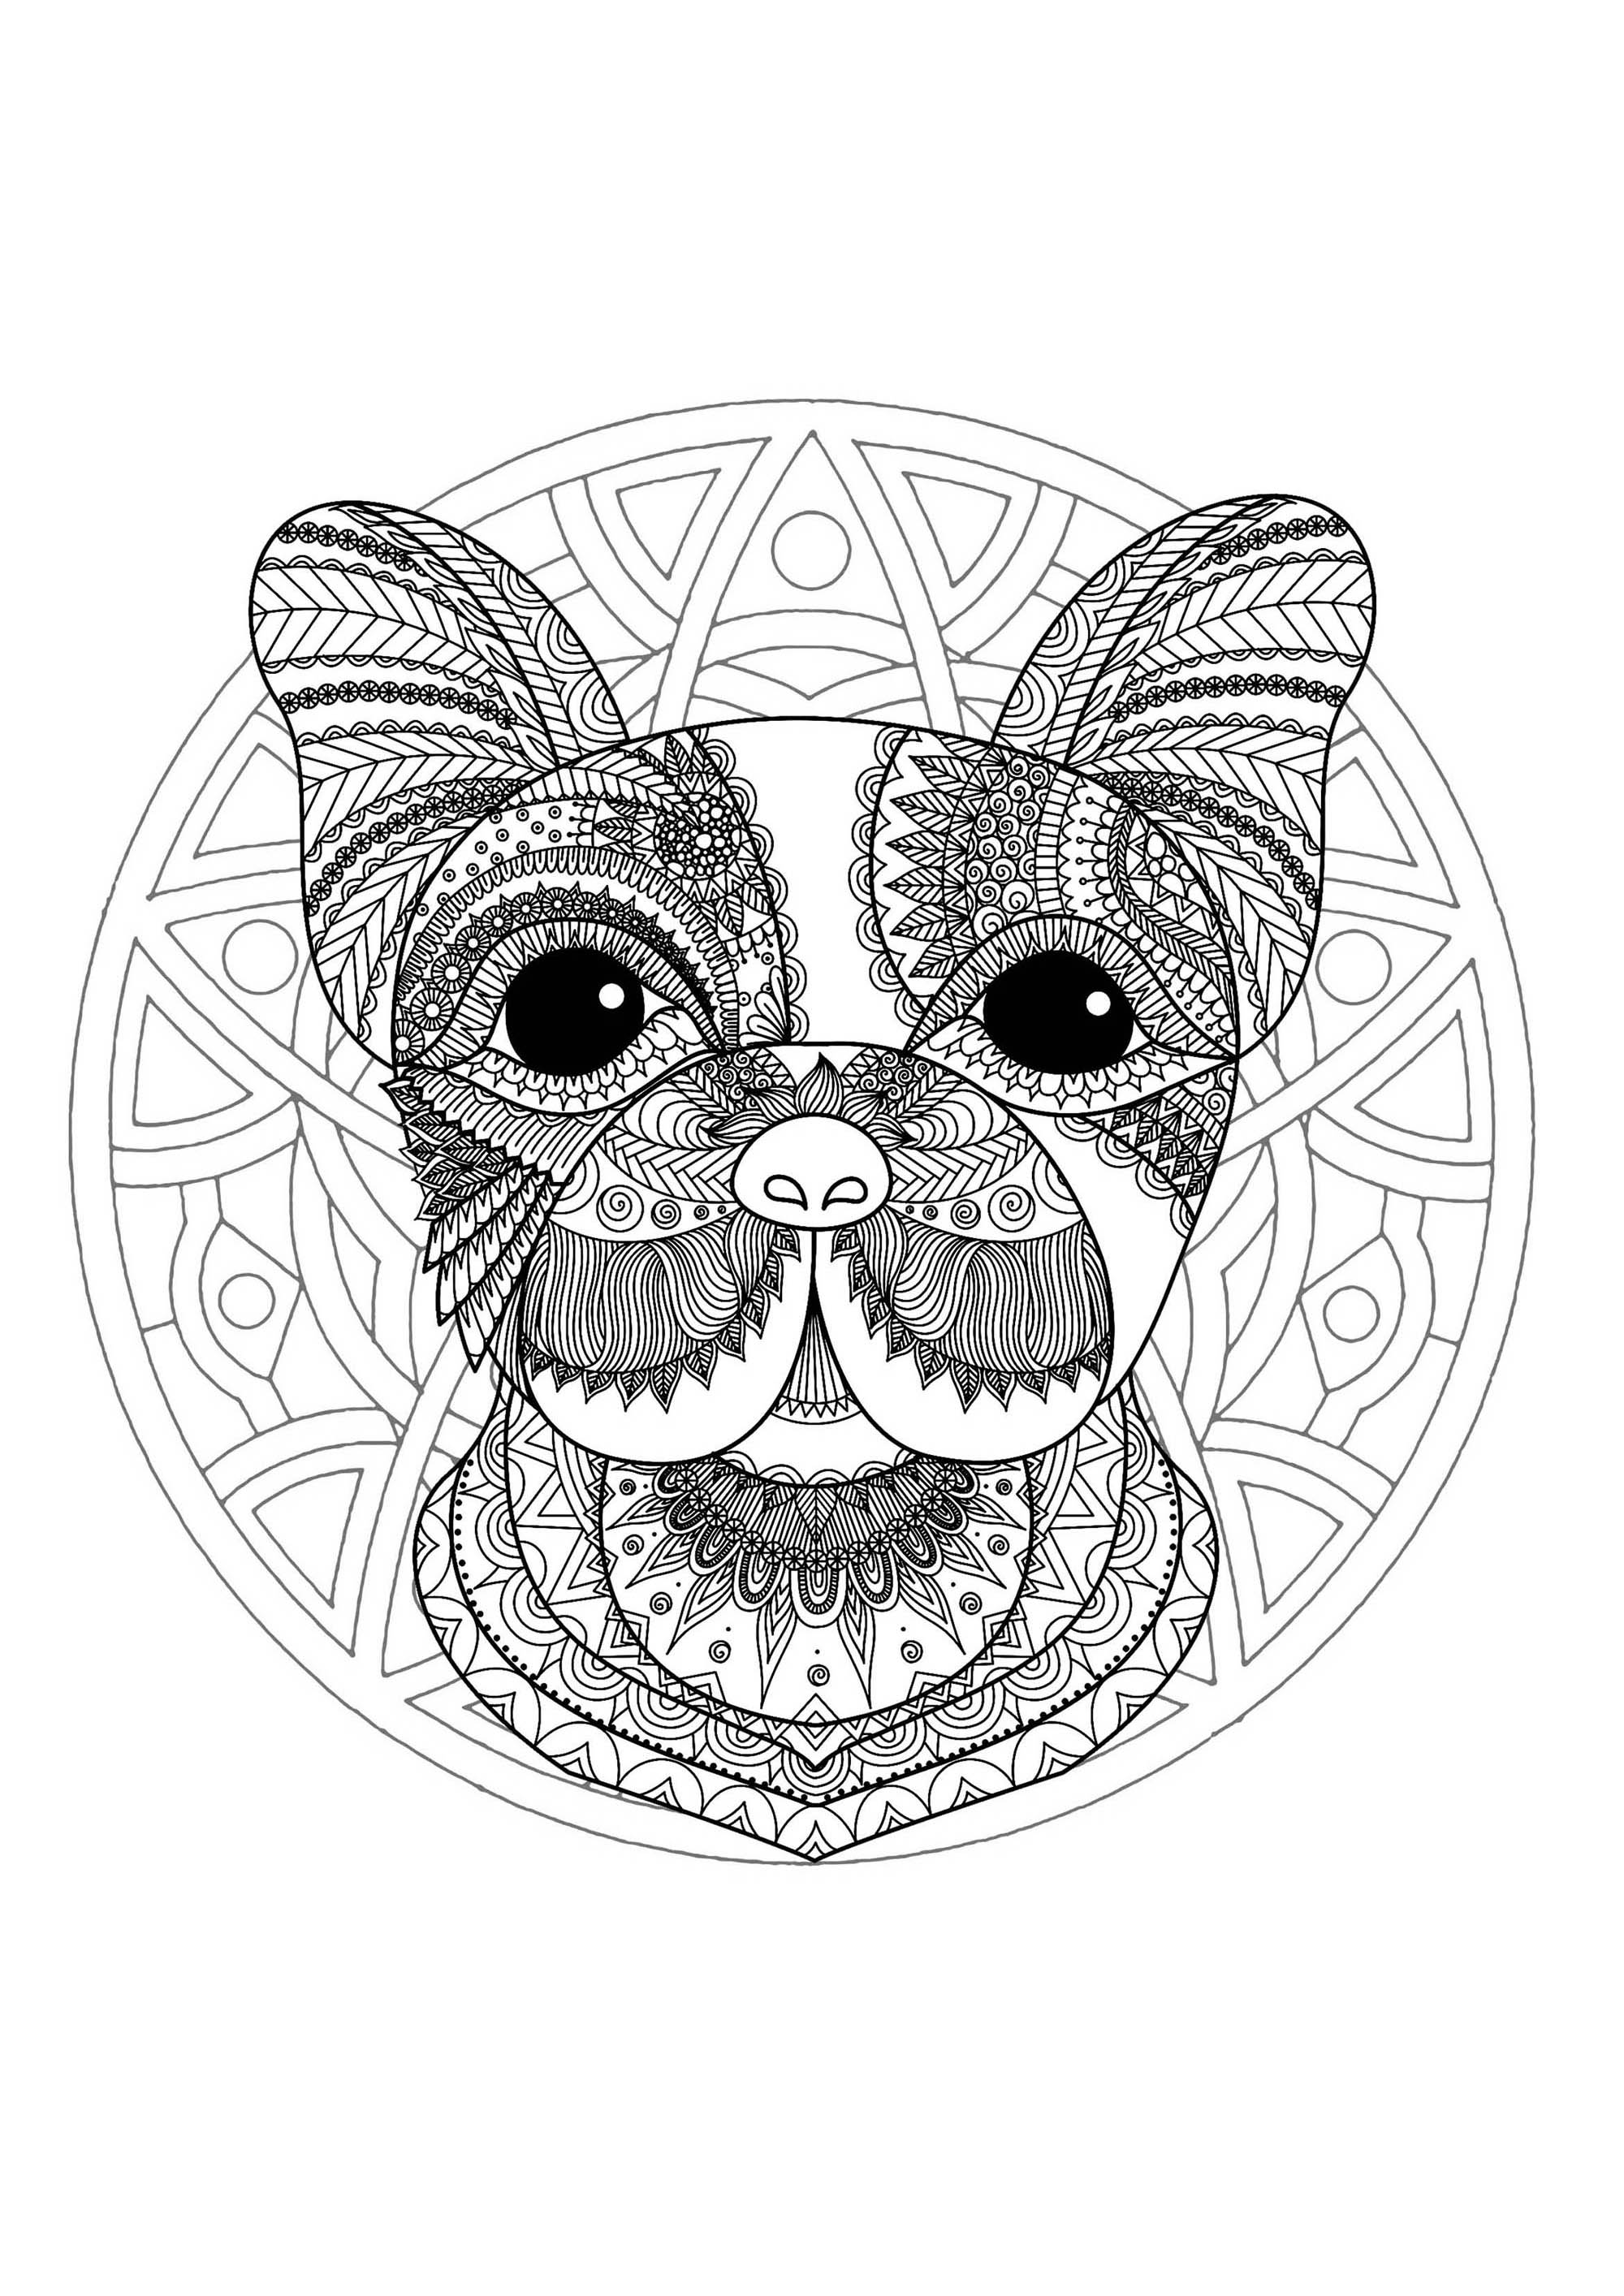 Mandala & Hundekopf. Ein recht schwieriges Mandala zum Ausmalen. Perfekt, wenn Sie gerne kleine Bereiche ausmalen und verschiedene Details mögen.